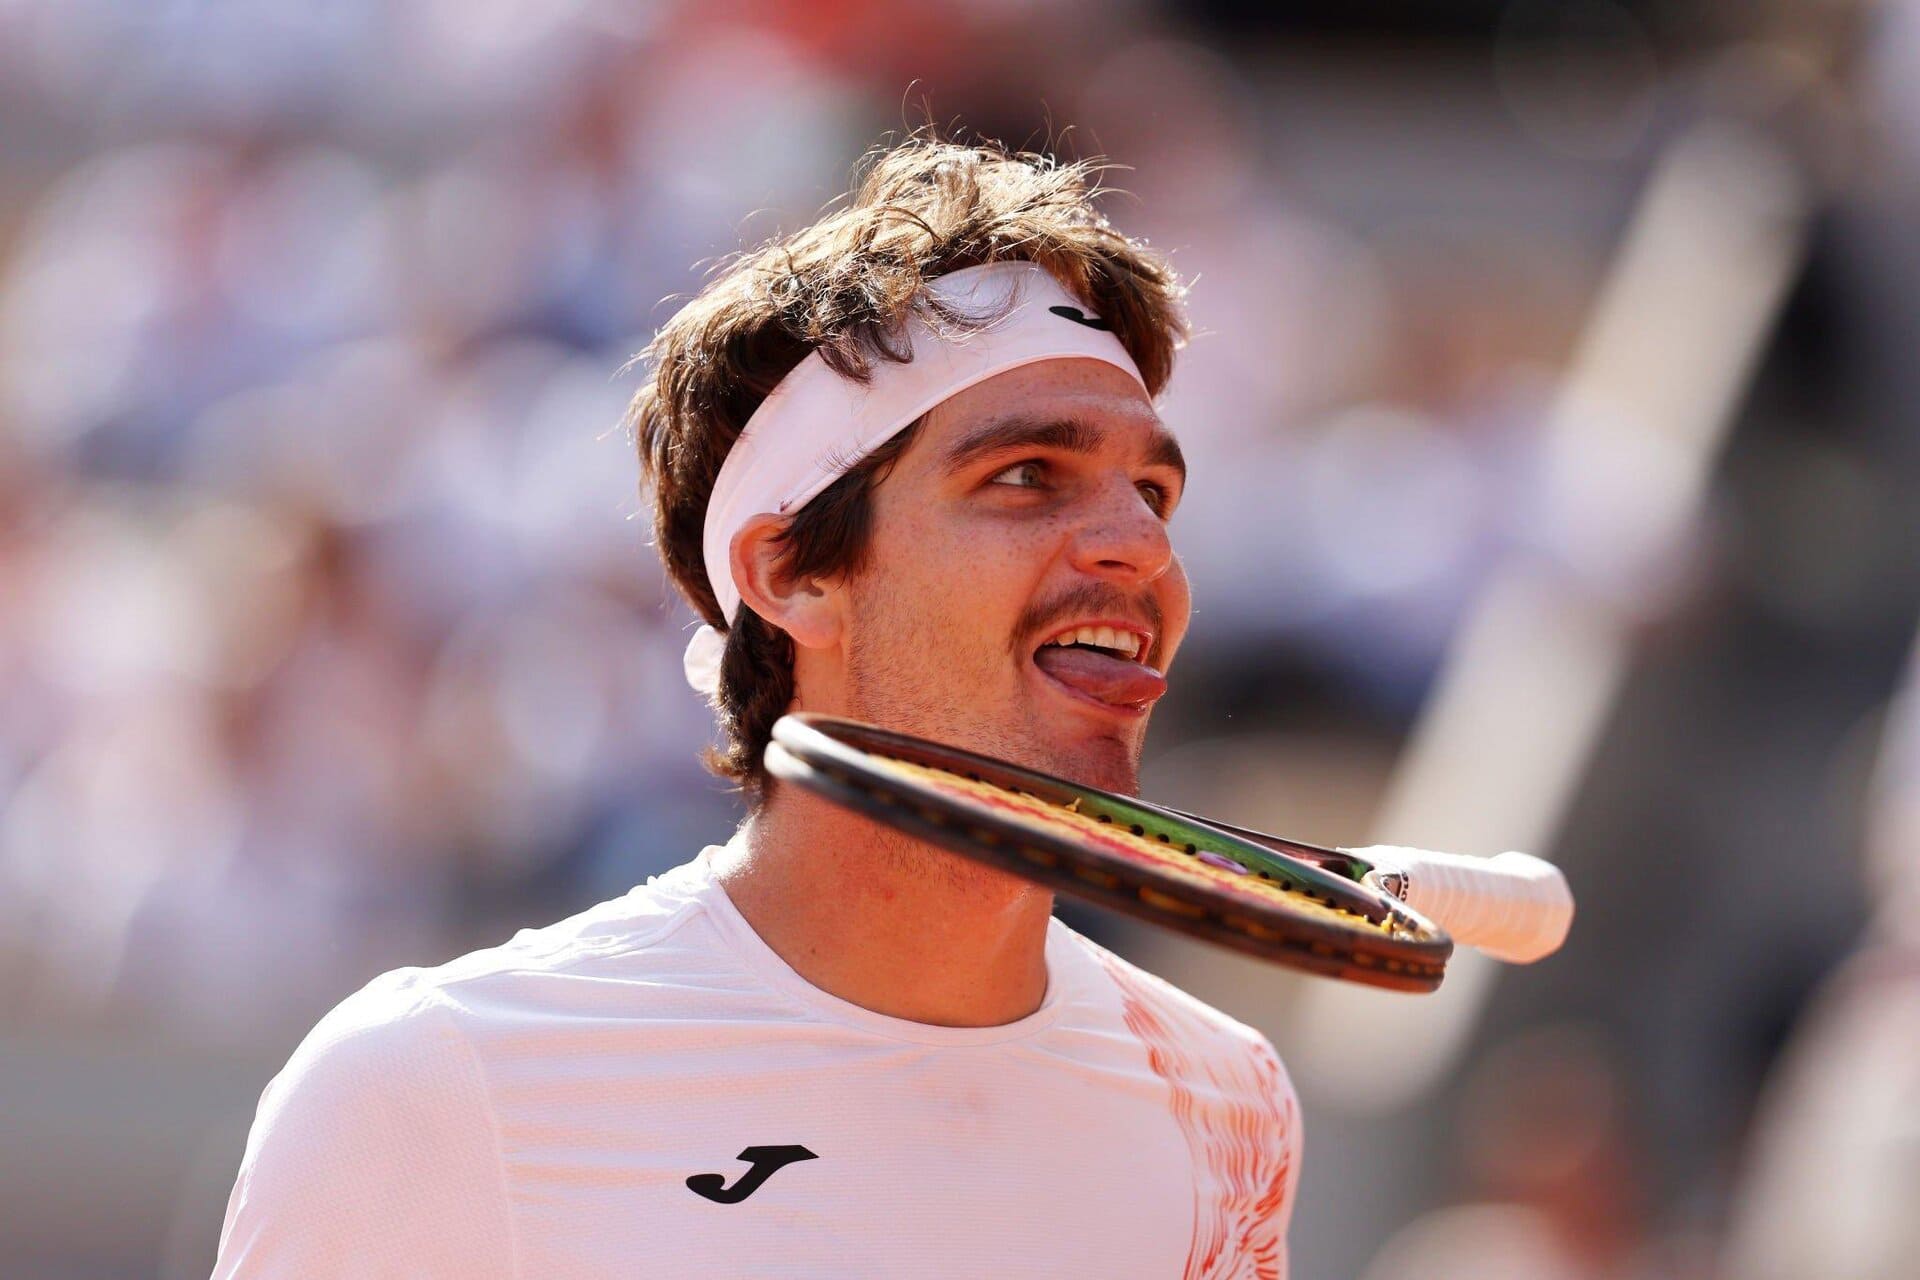 torneio de Roland Garros 2022: prévia do tênis individual masculino da ATP